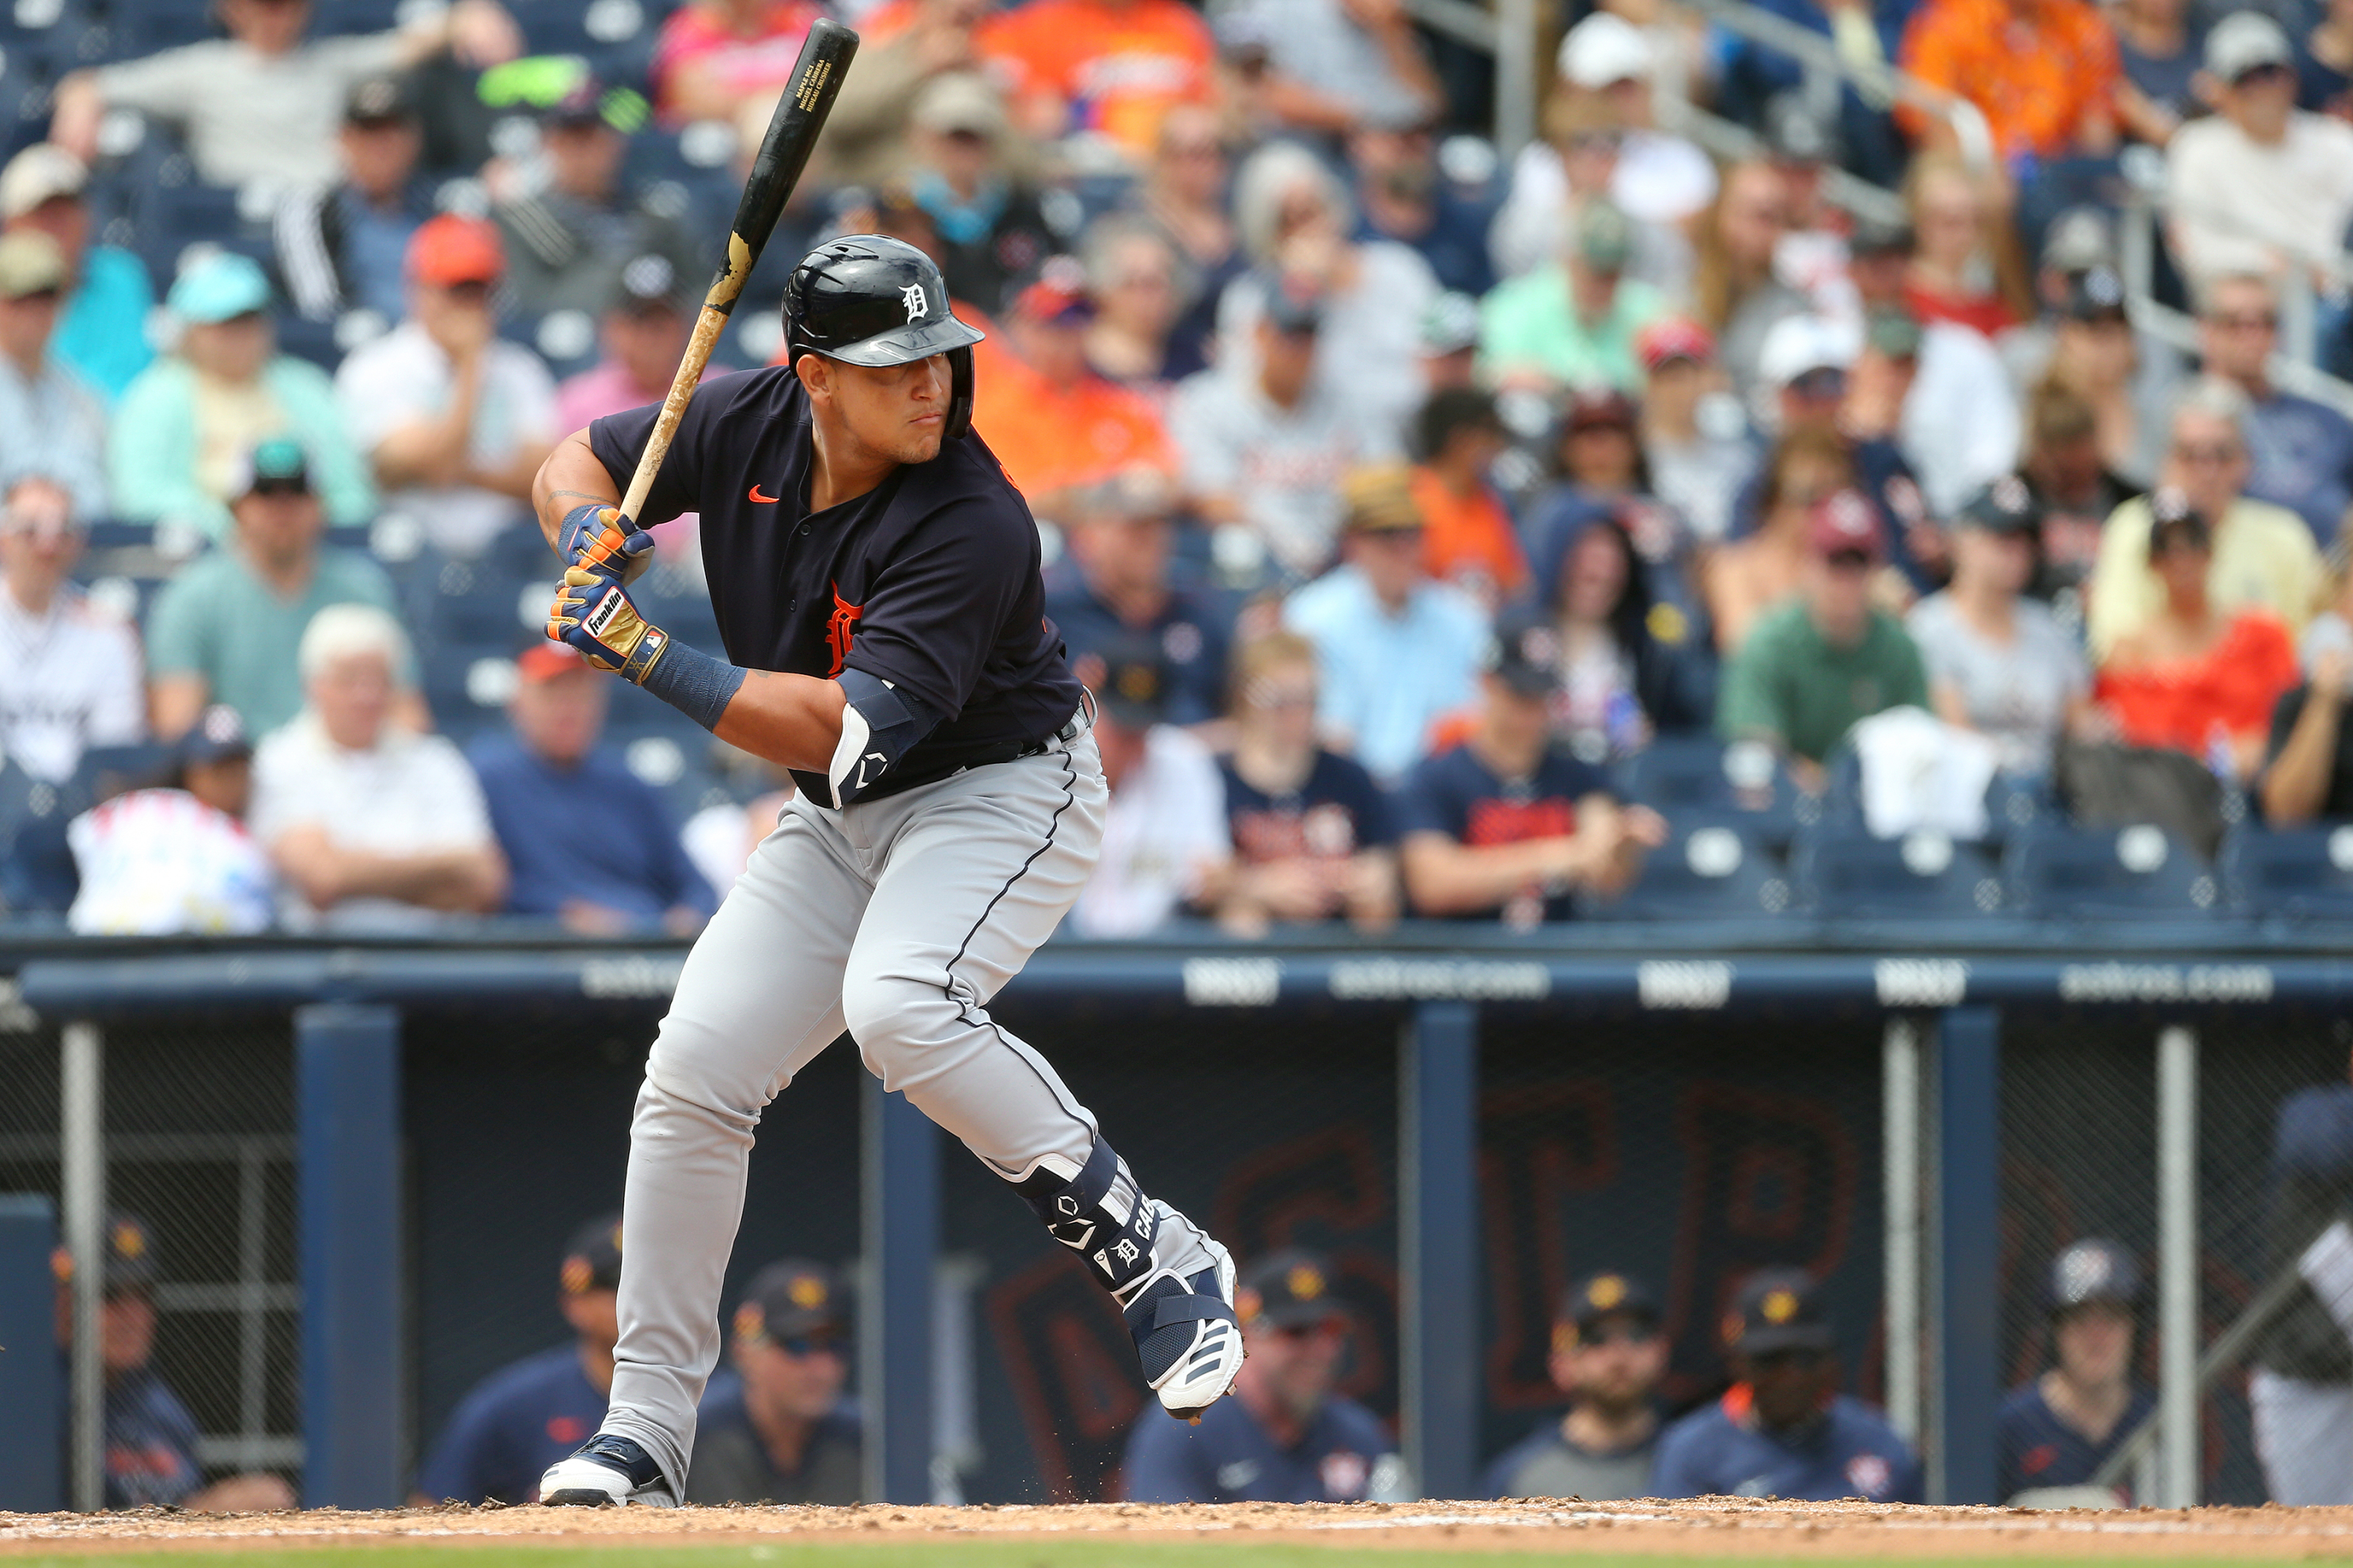 Detroit Tigers: Could shortened season help Miguel Cabrera revival?